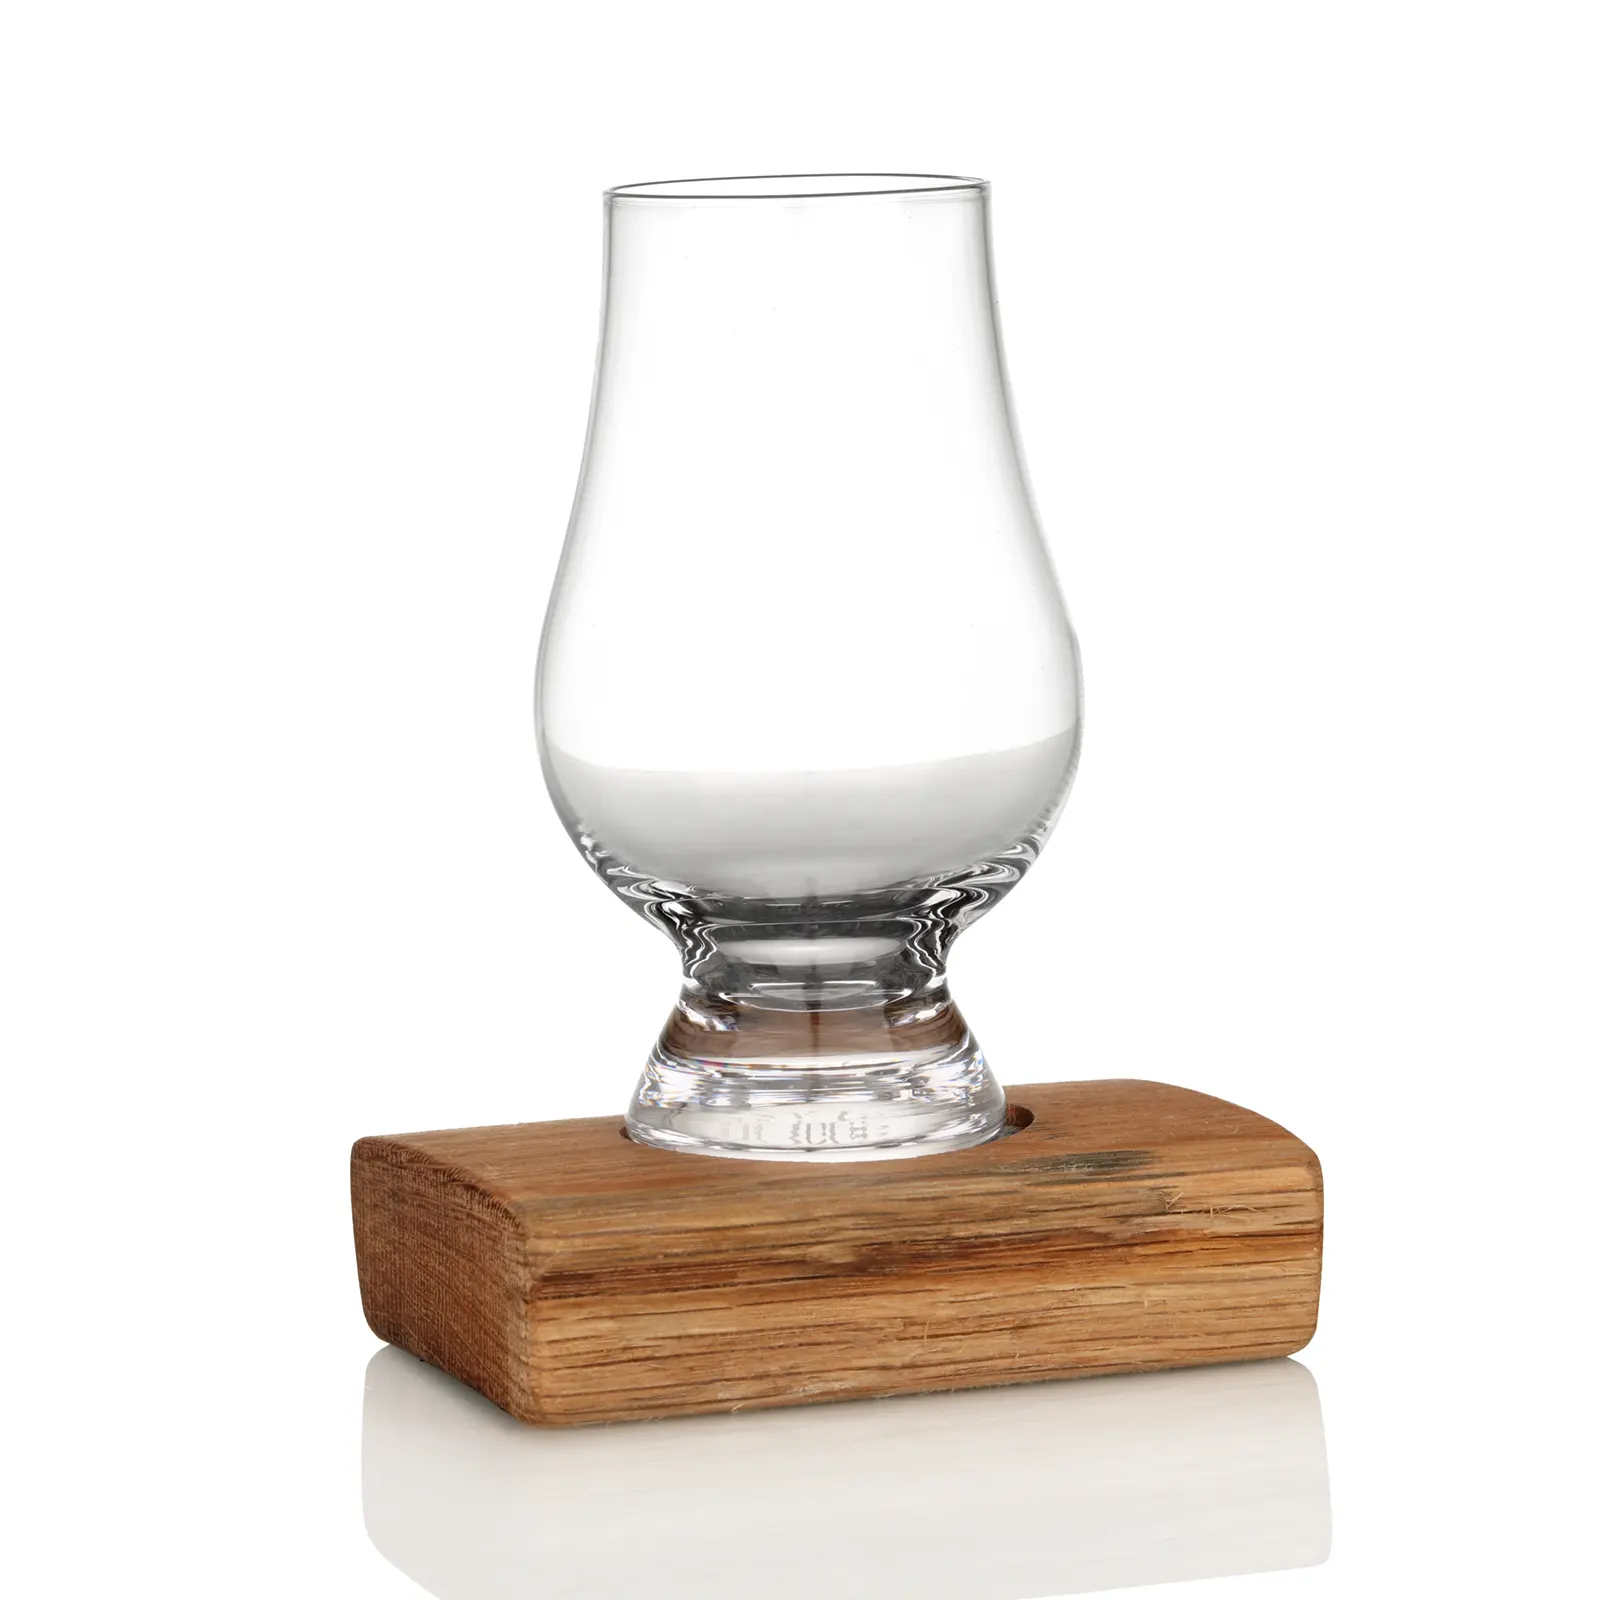 Whisky Fass Flight Tray aus Eiche - passend für 1 Glencairn Tasting Glas